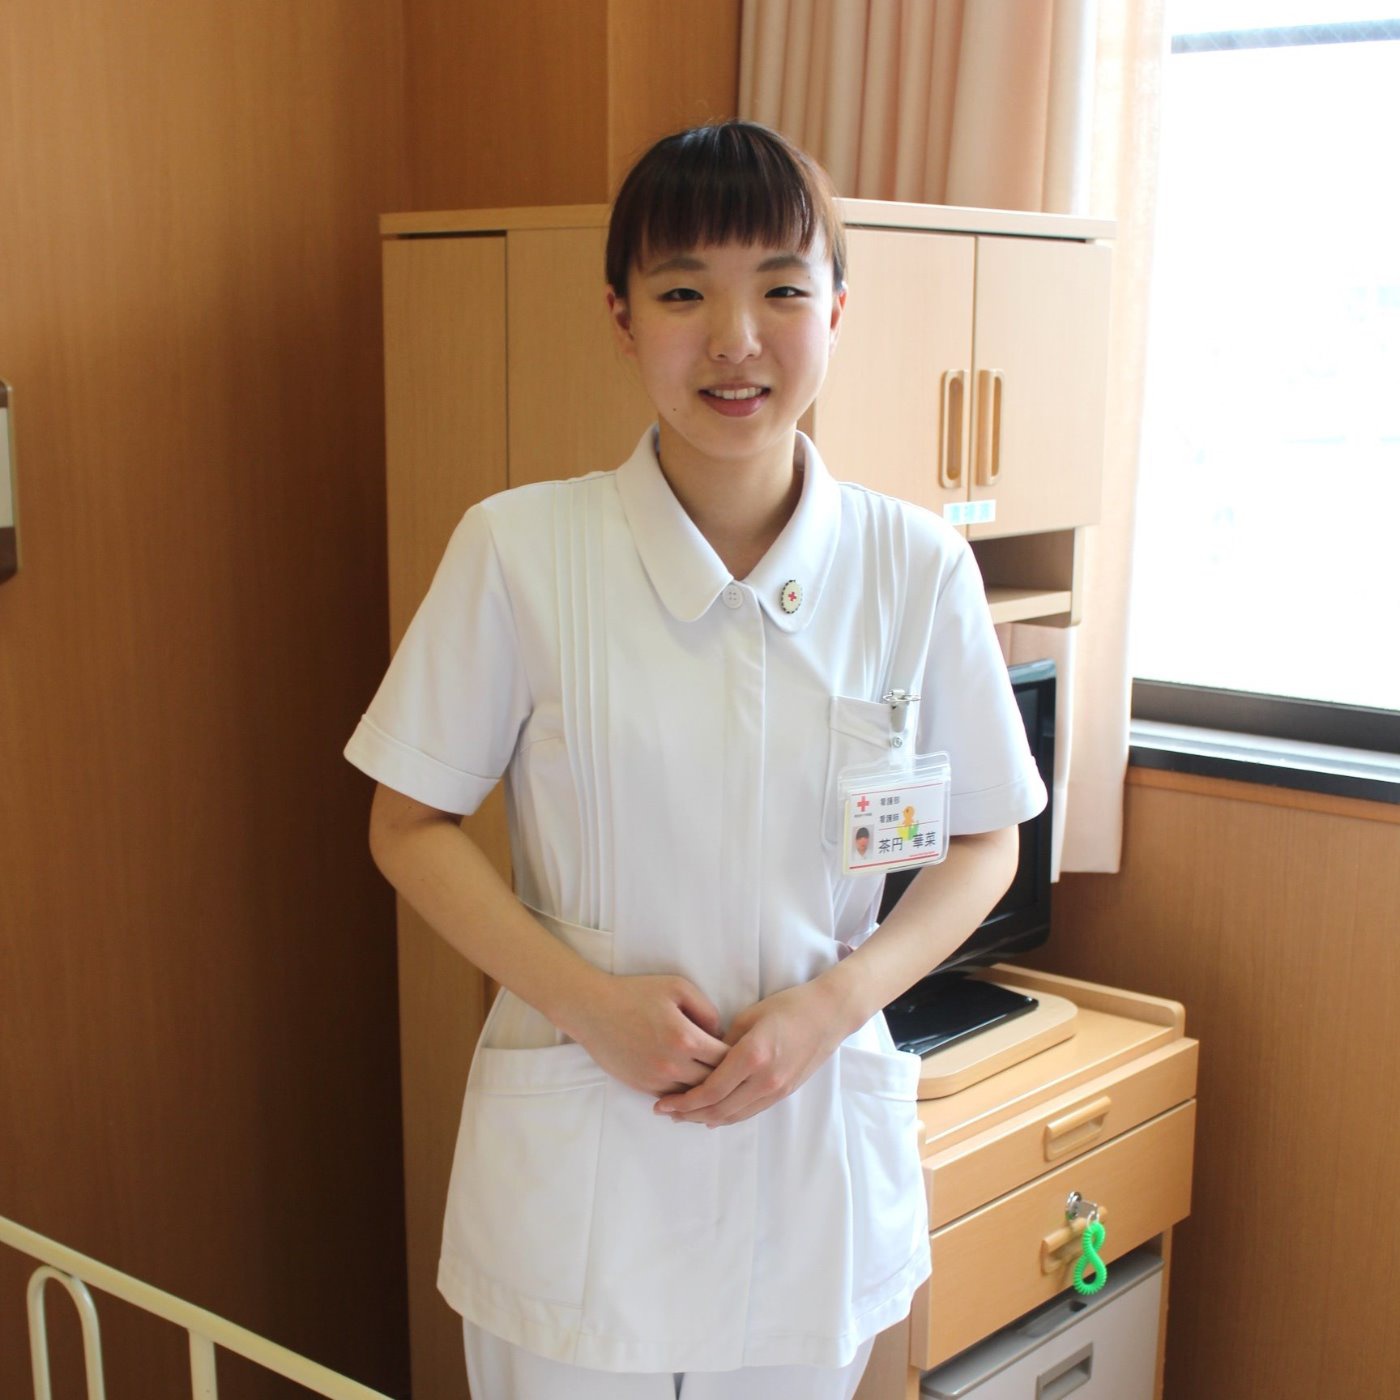 新人ナース 夜勤に入っての気持ち Nurse Recruit Blog Nurse Recruit 高松赤十字病院 看護部ホームページ